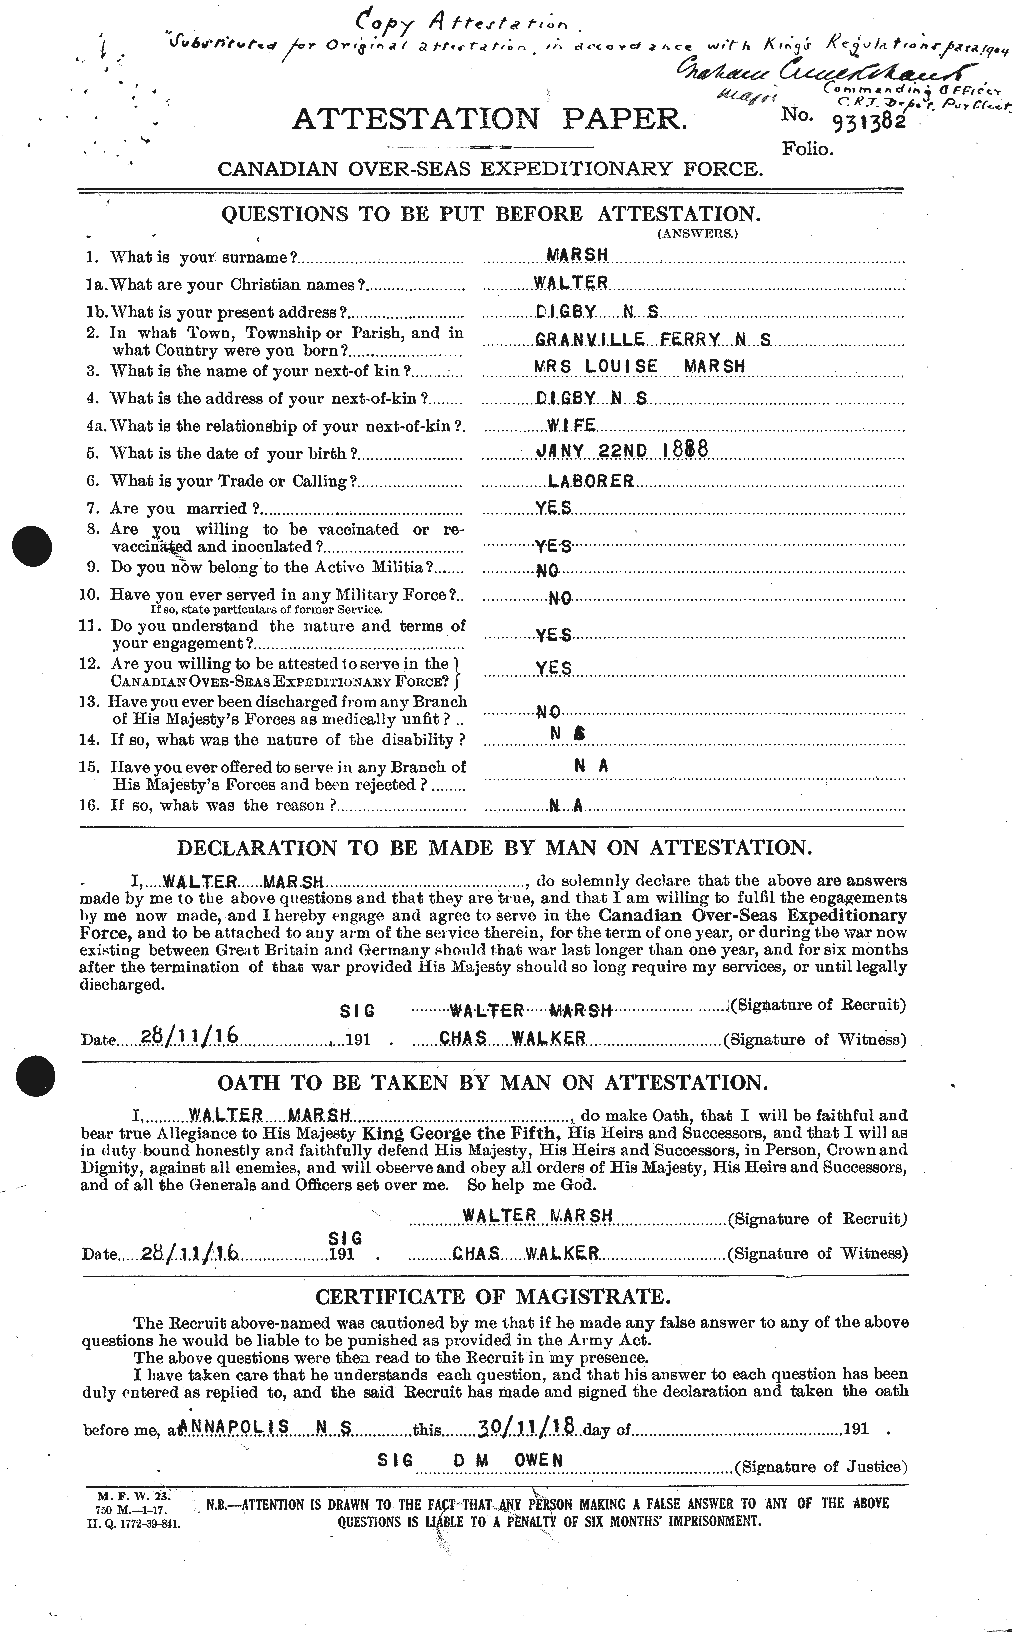 Dossiers du Personnel de la Première Guerre mondiale - CEC 495647a